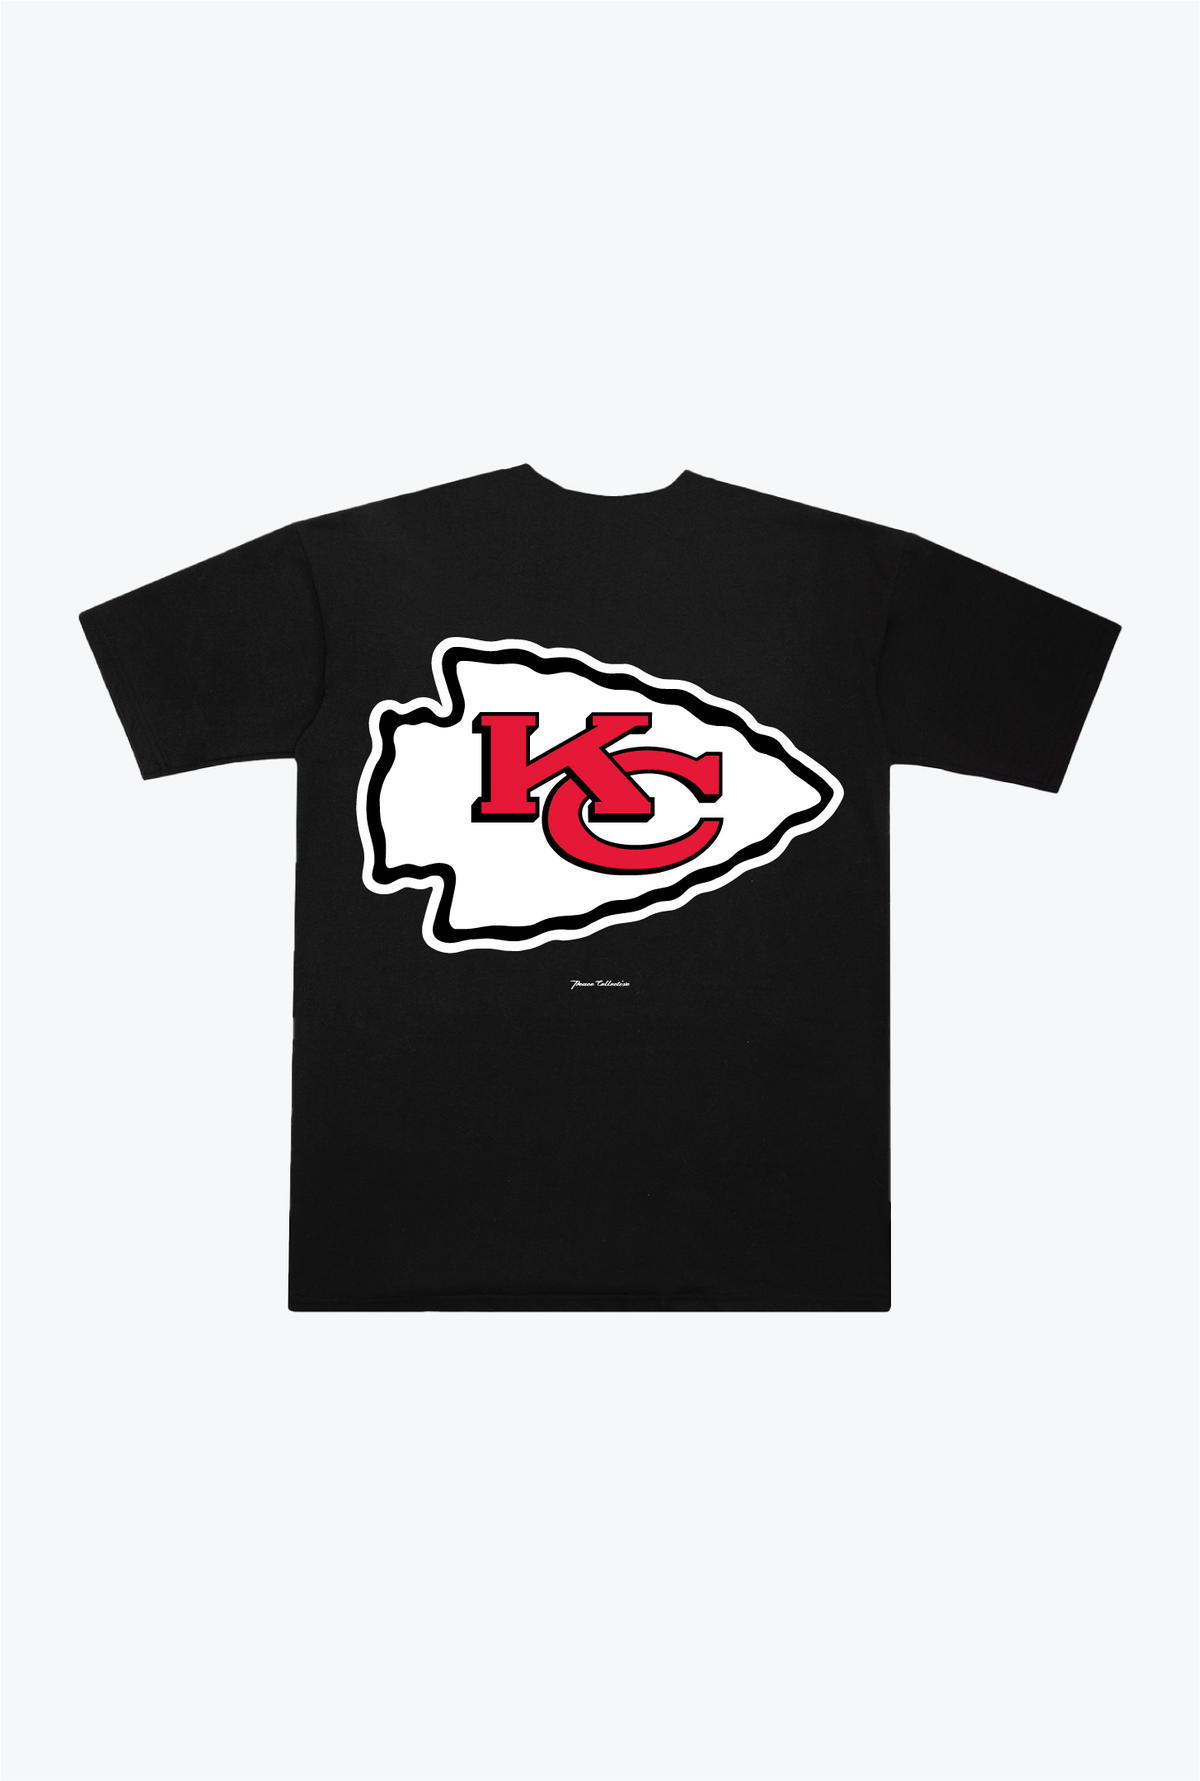 Kansas City Chiefs Heavyweight T-Shirt - Black